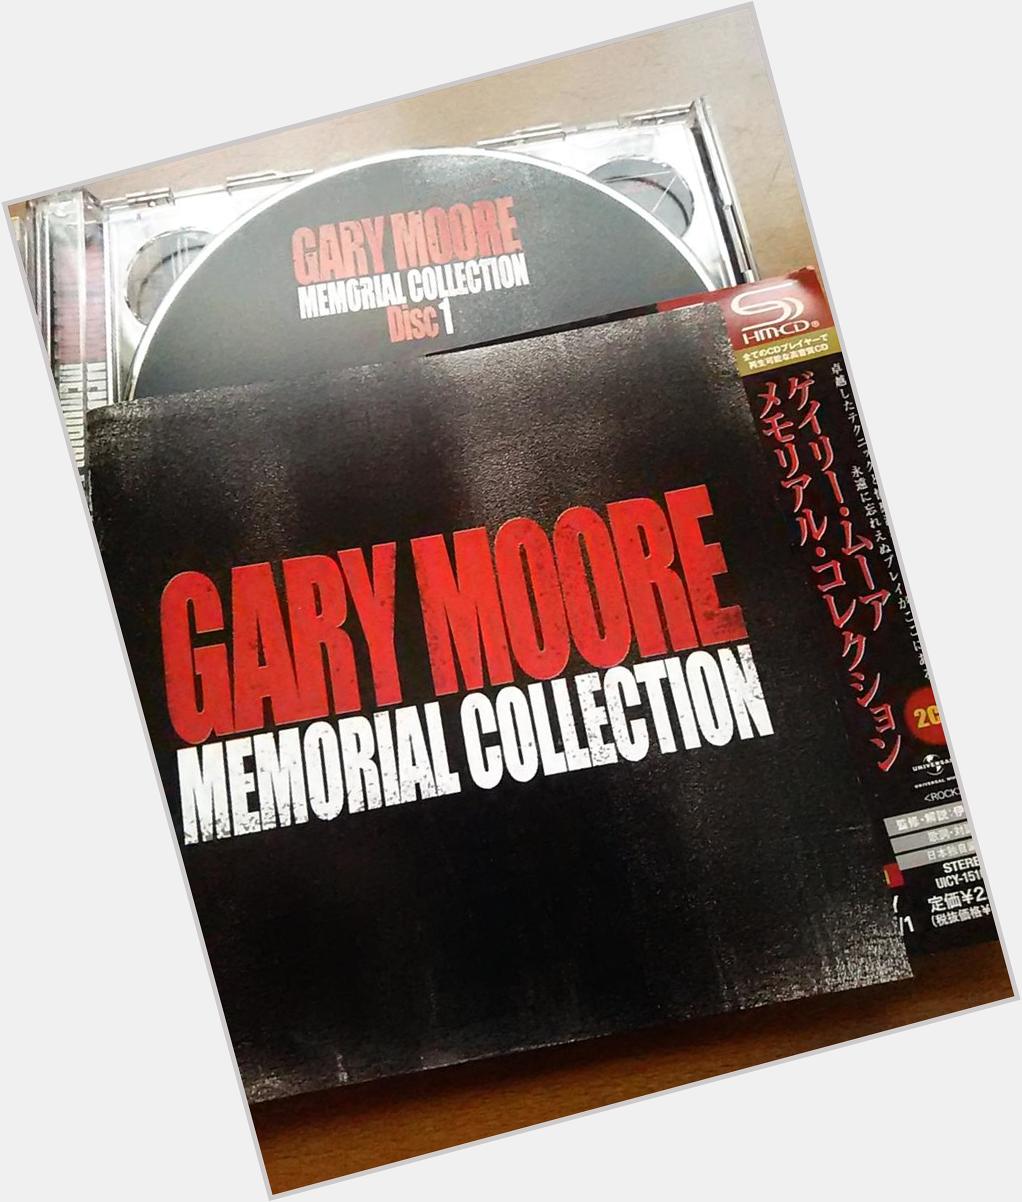 Happy Birthday!! Gary Moore R.I.P
Gary Moore - Still Got The Blues (Live):  